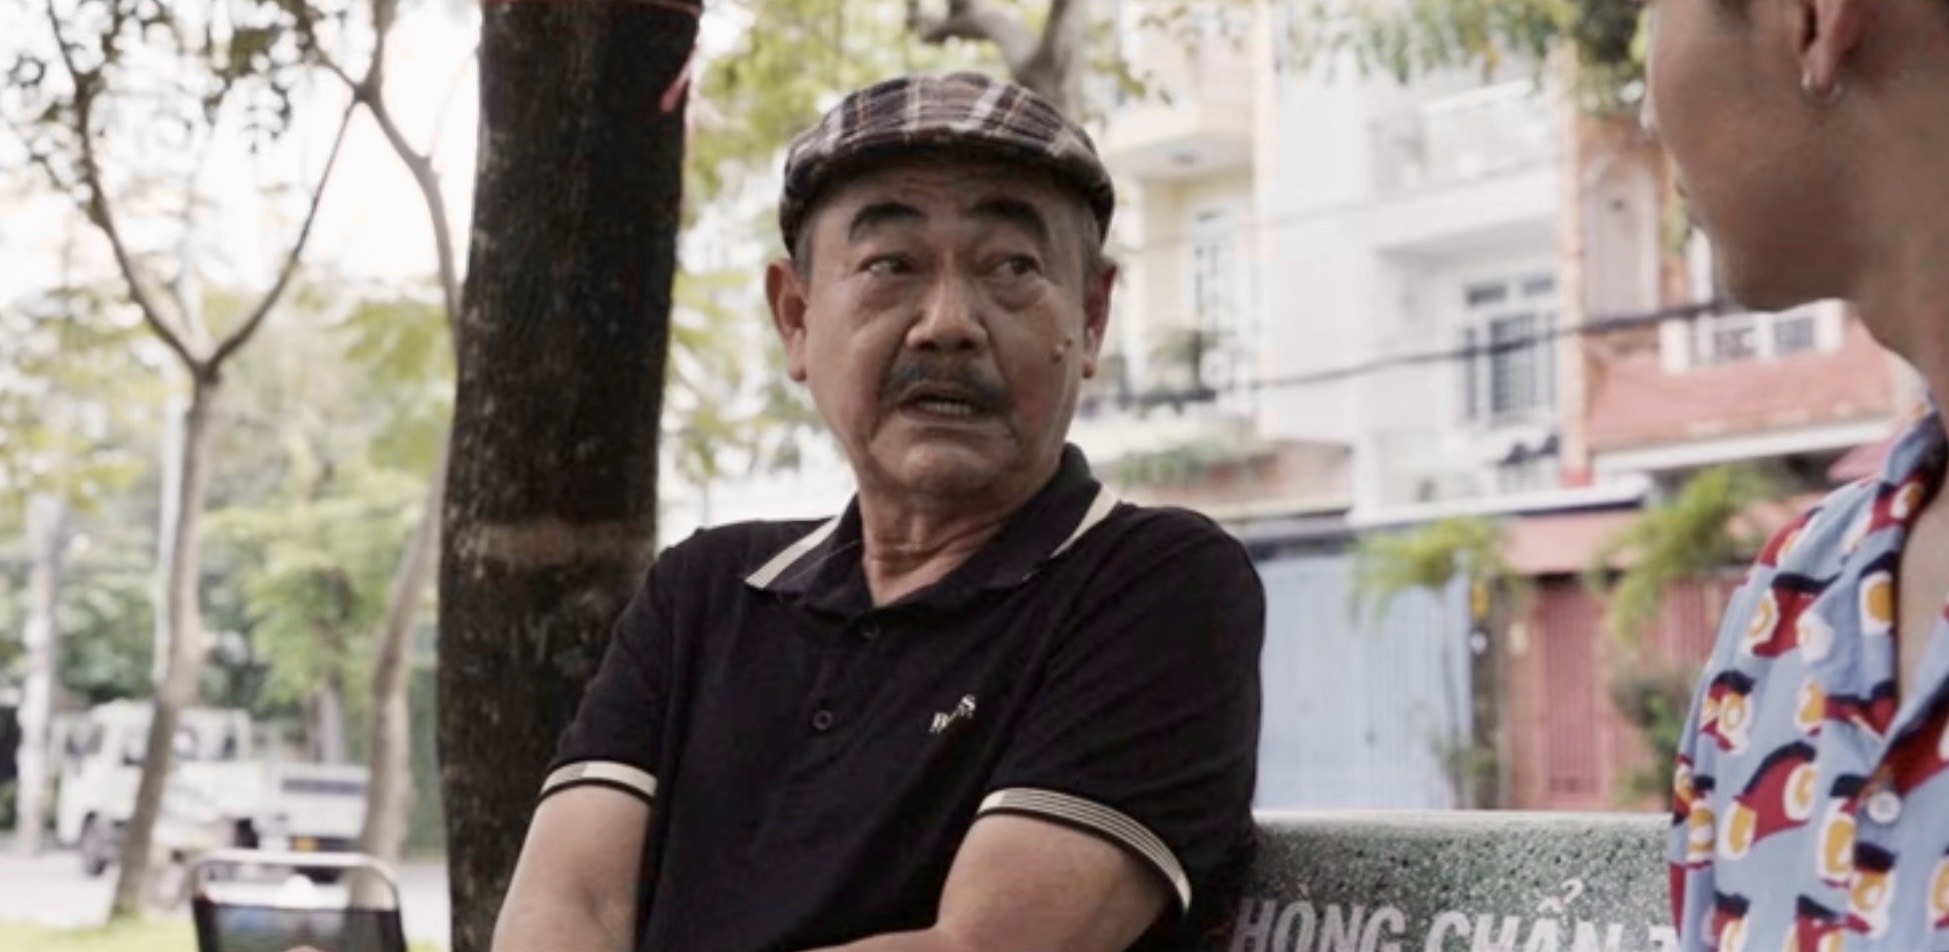 NSND Việt Anh trong tập 2 của series Chuyện tử tế